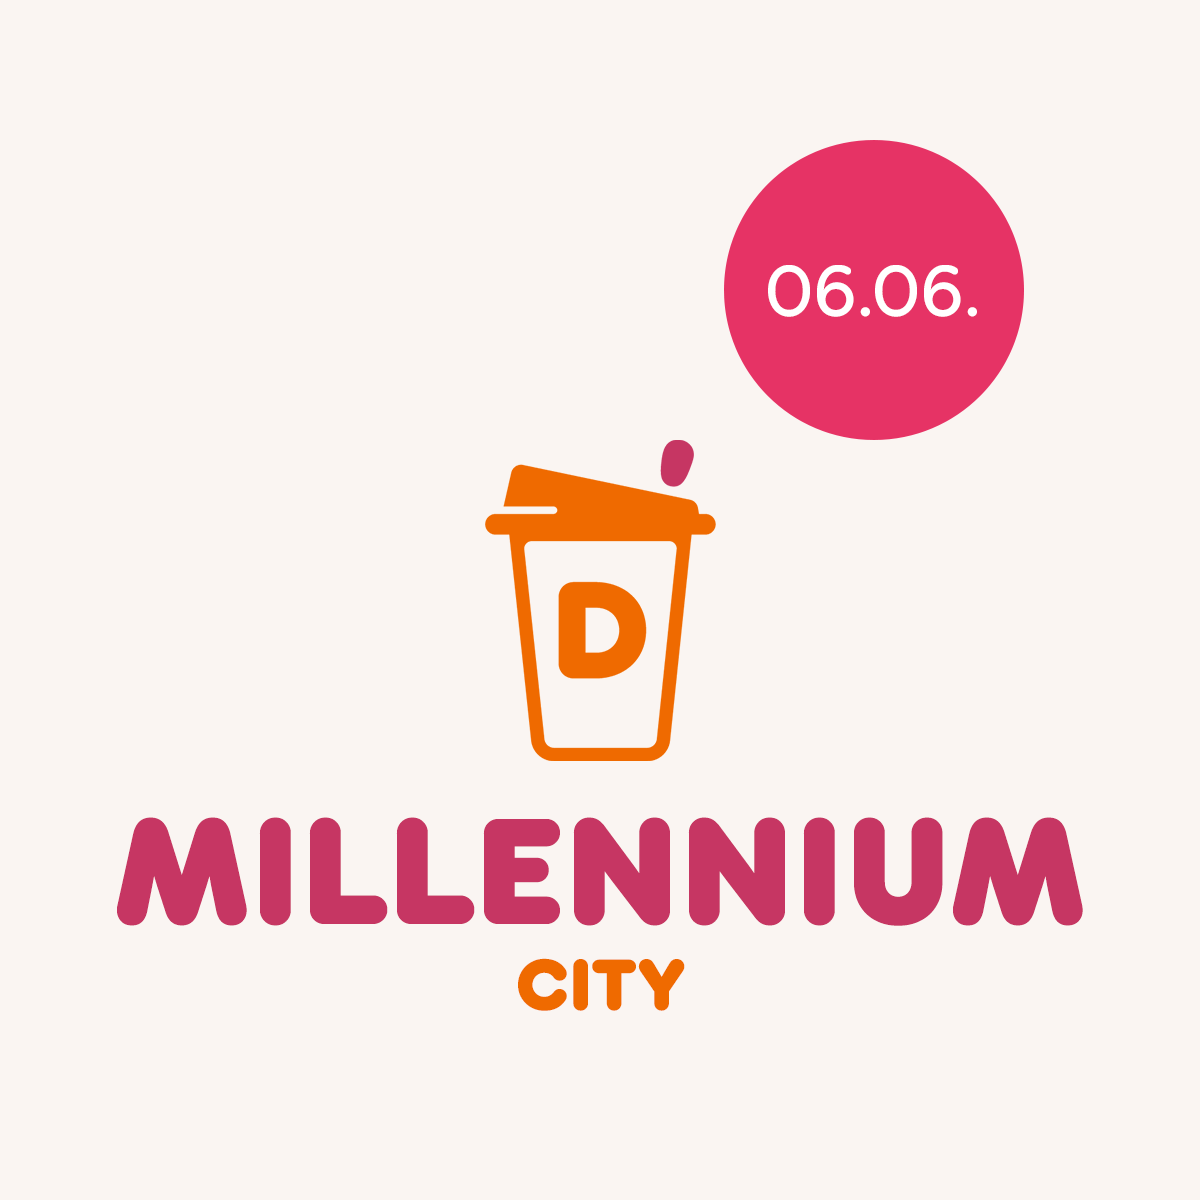 MILLENNIUM City 06.06.